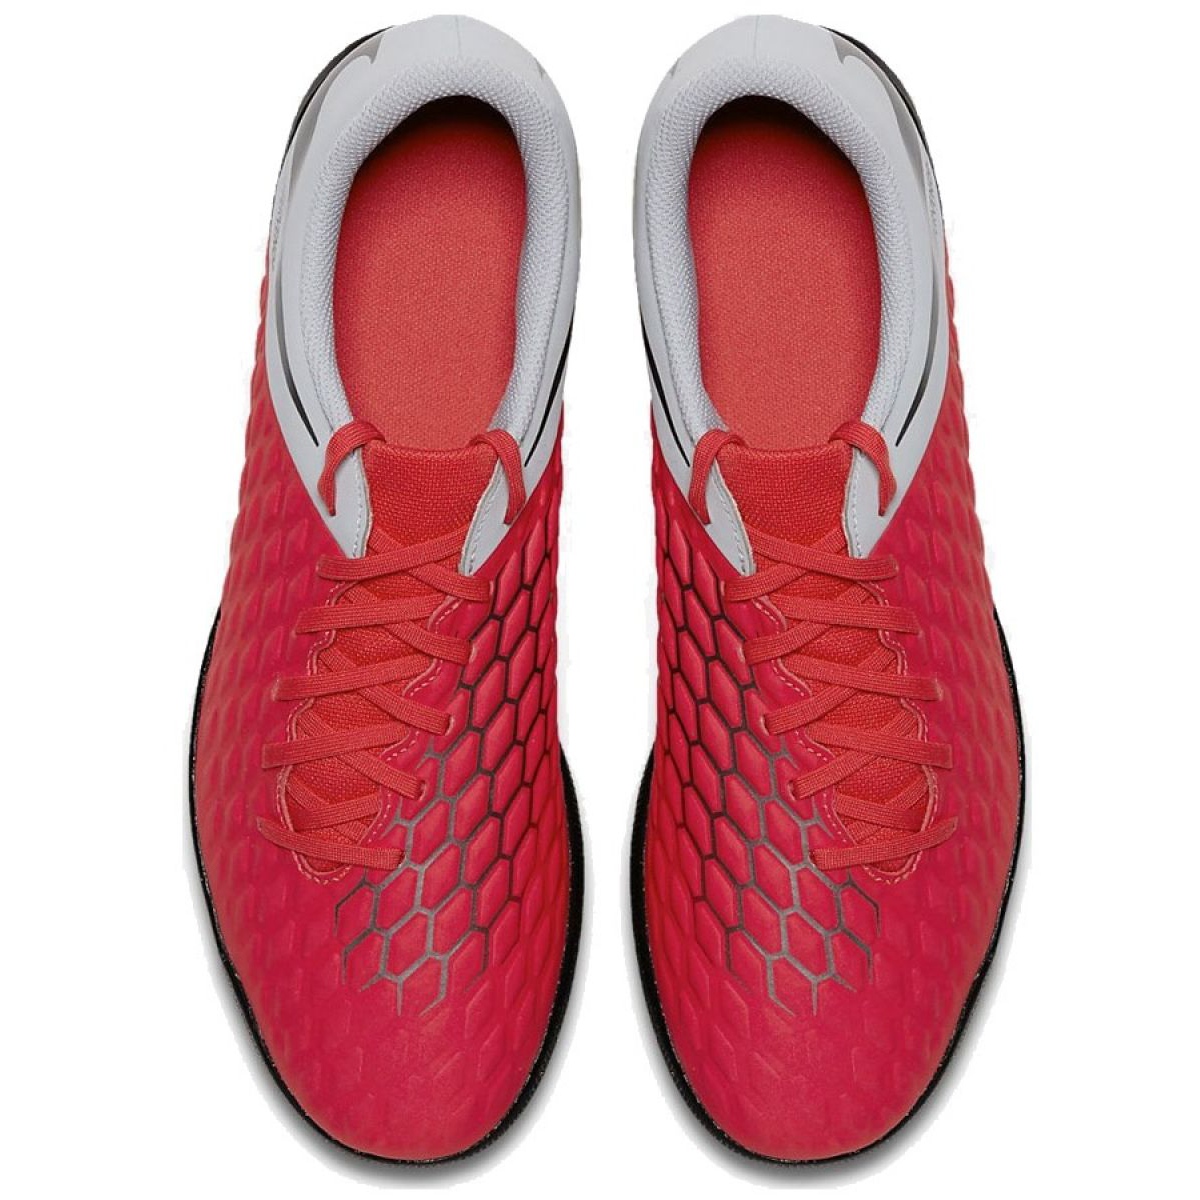 Indoor shoes Nike Hypervenom Phantomx 3 Club Ic M AJ3808-600 red red -